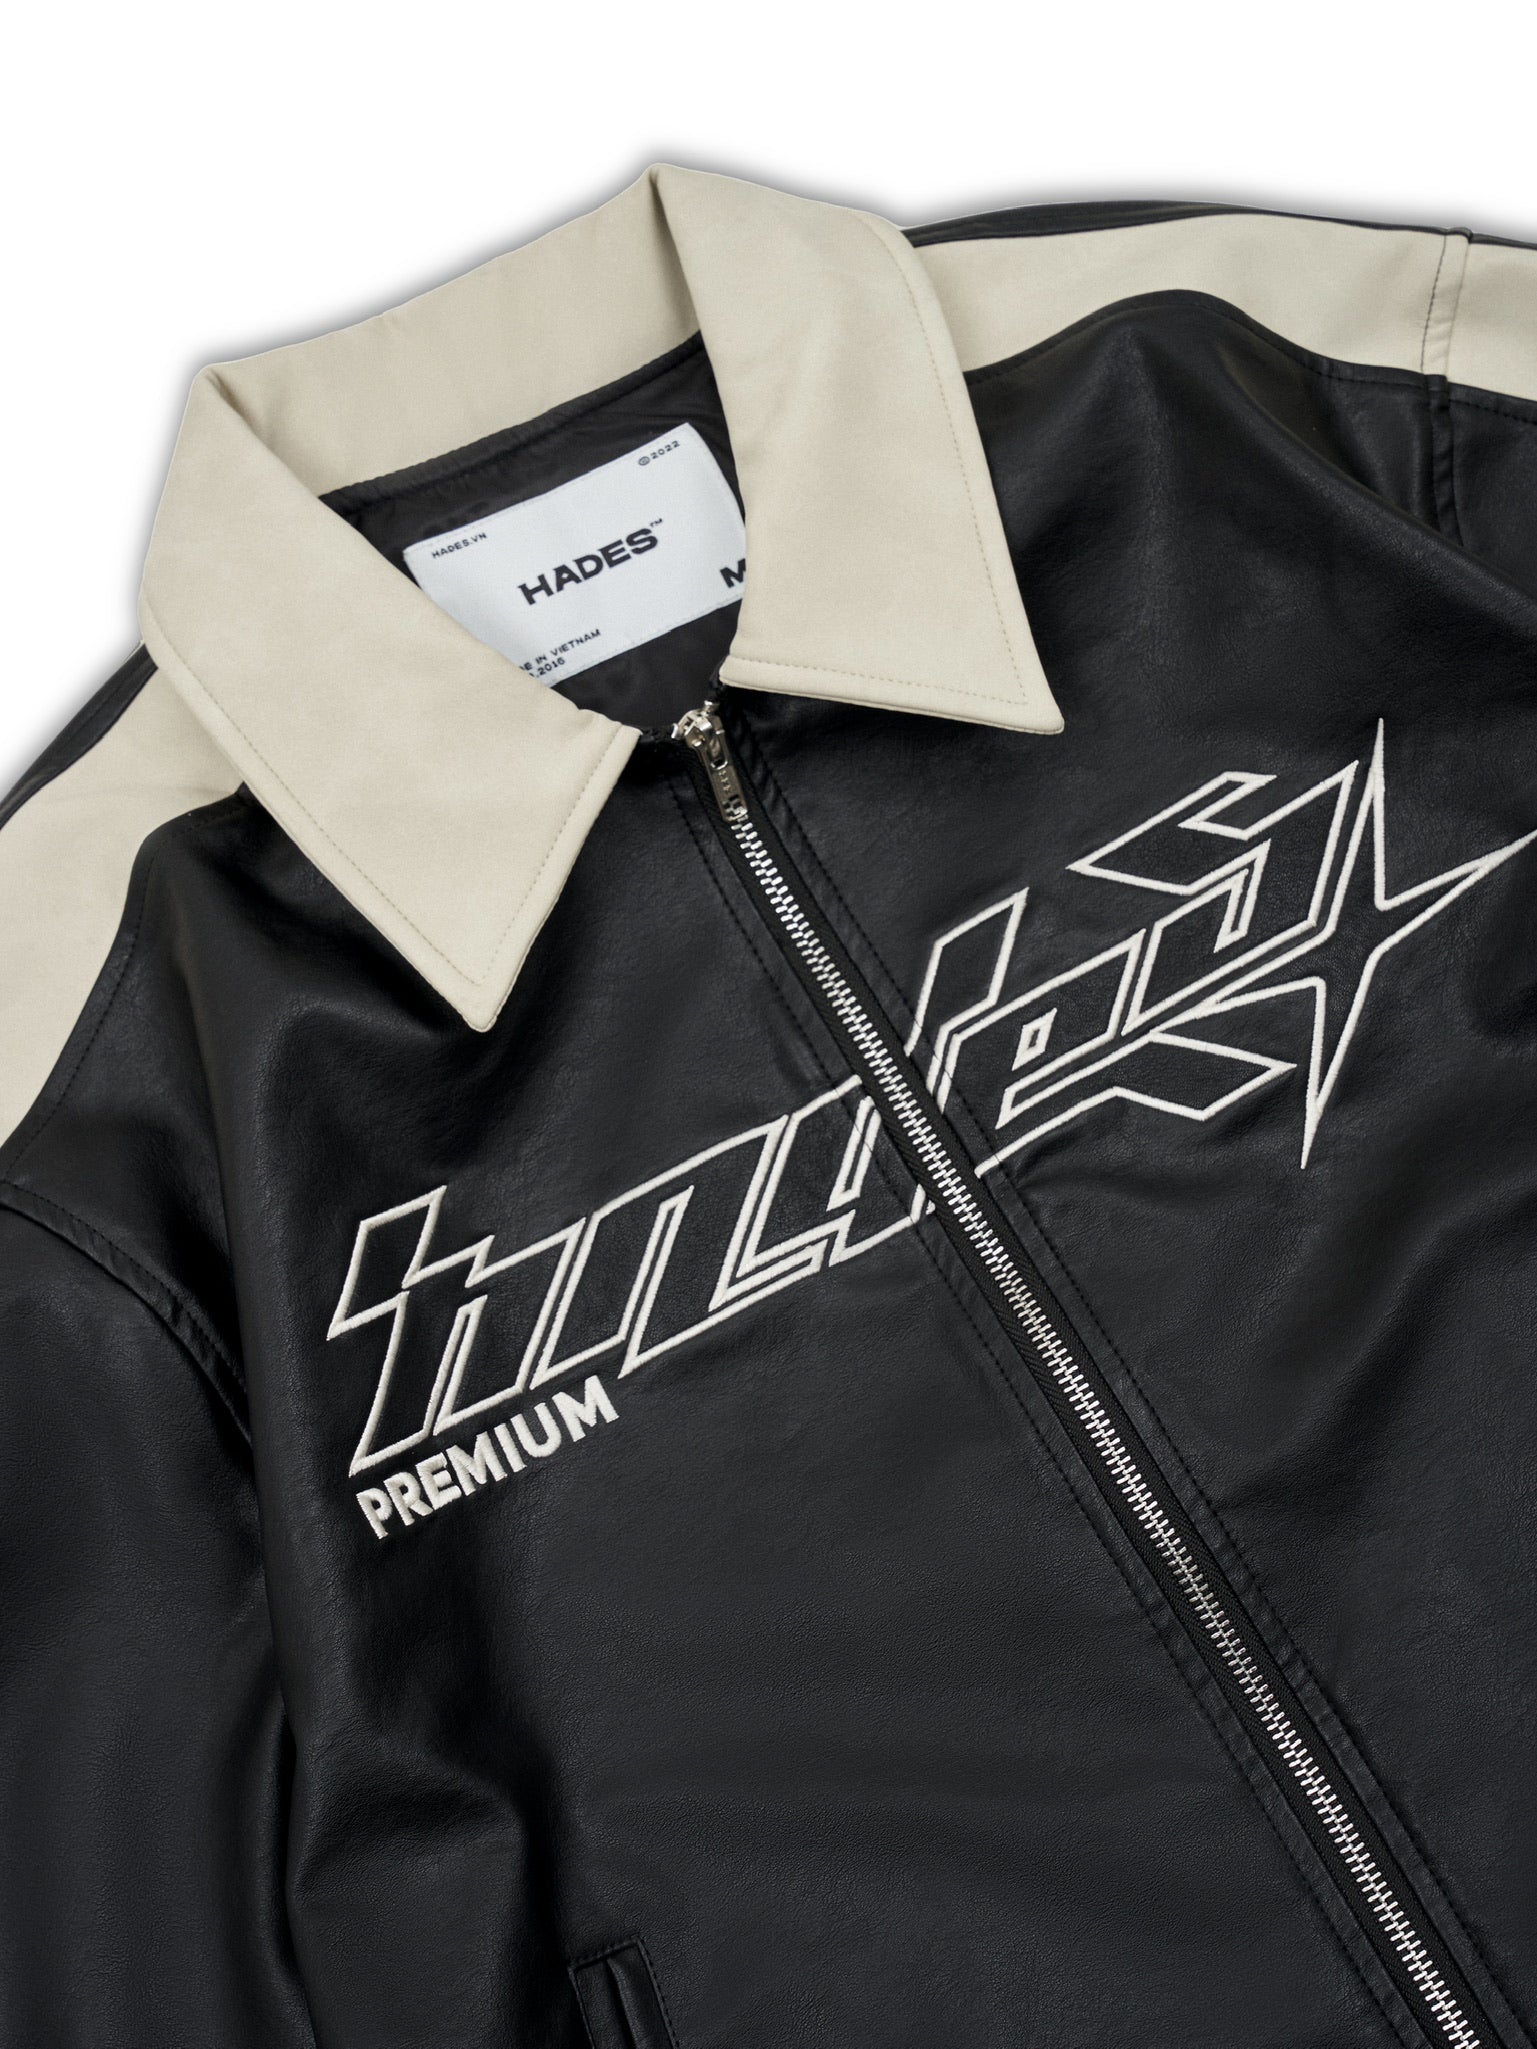 Dominator leather jacket